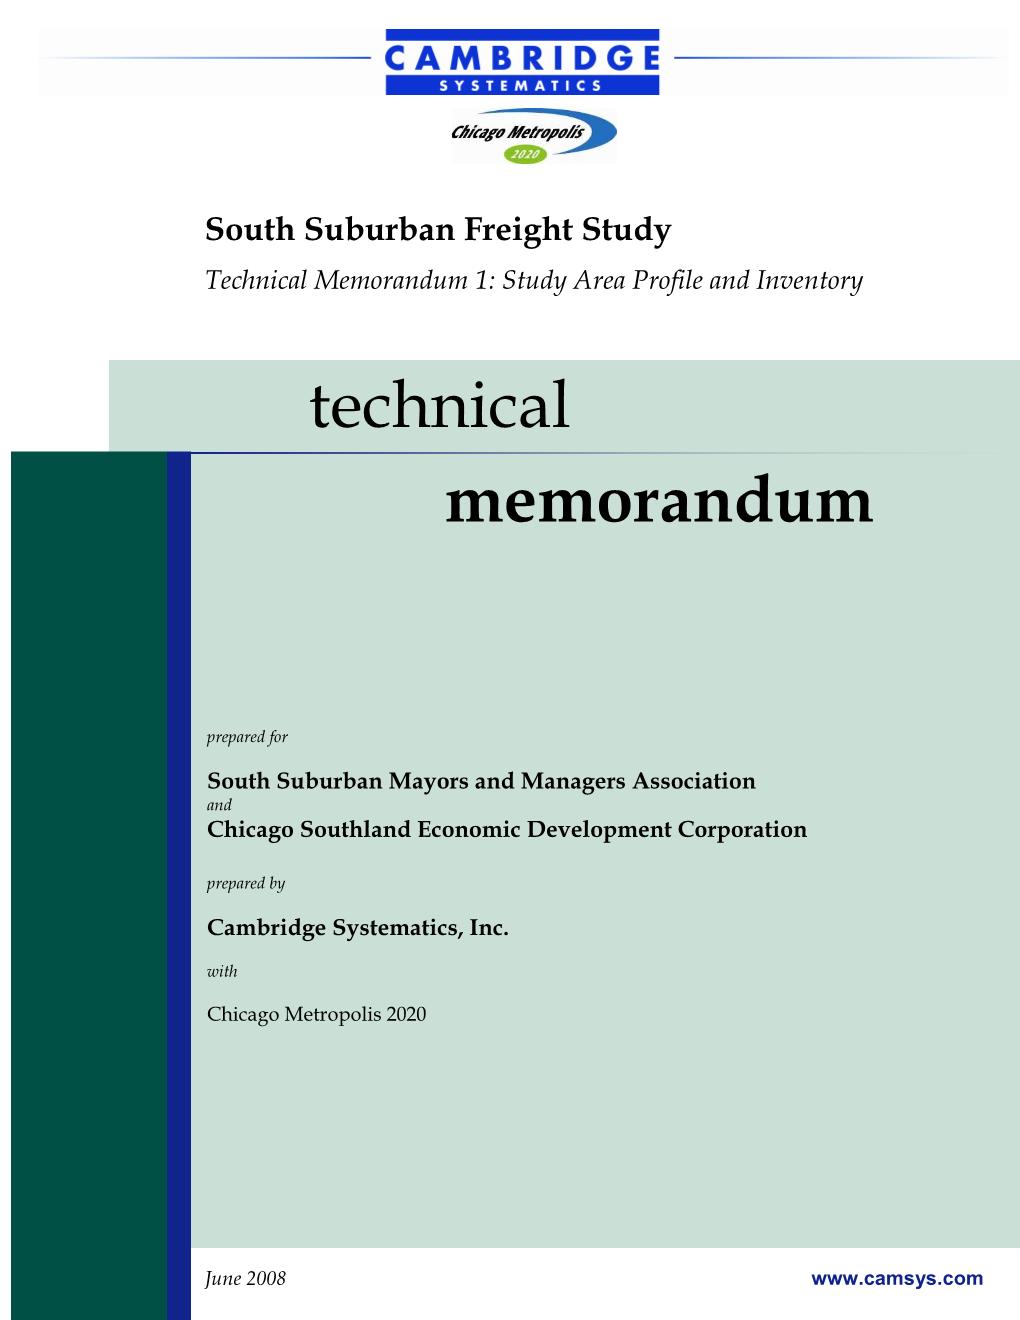 SSMMA Freight Technical Memorandum 1 June 2008